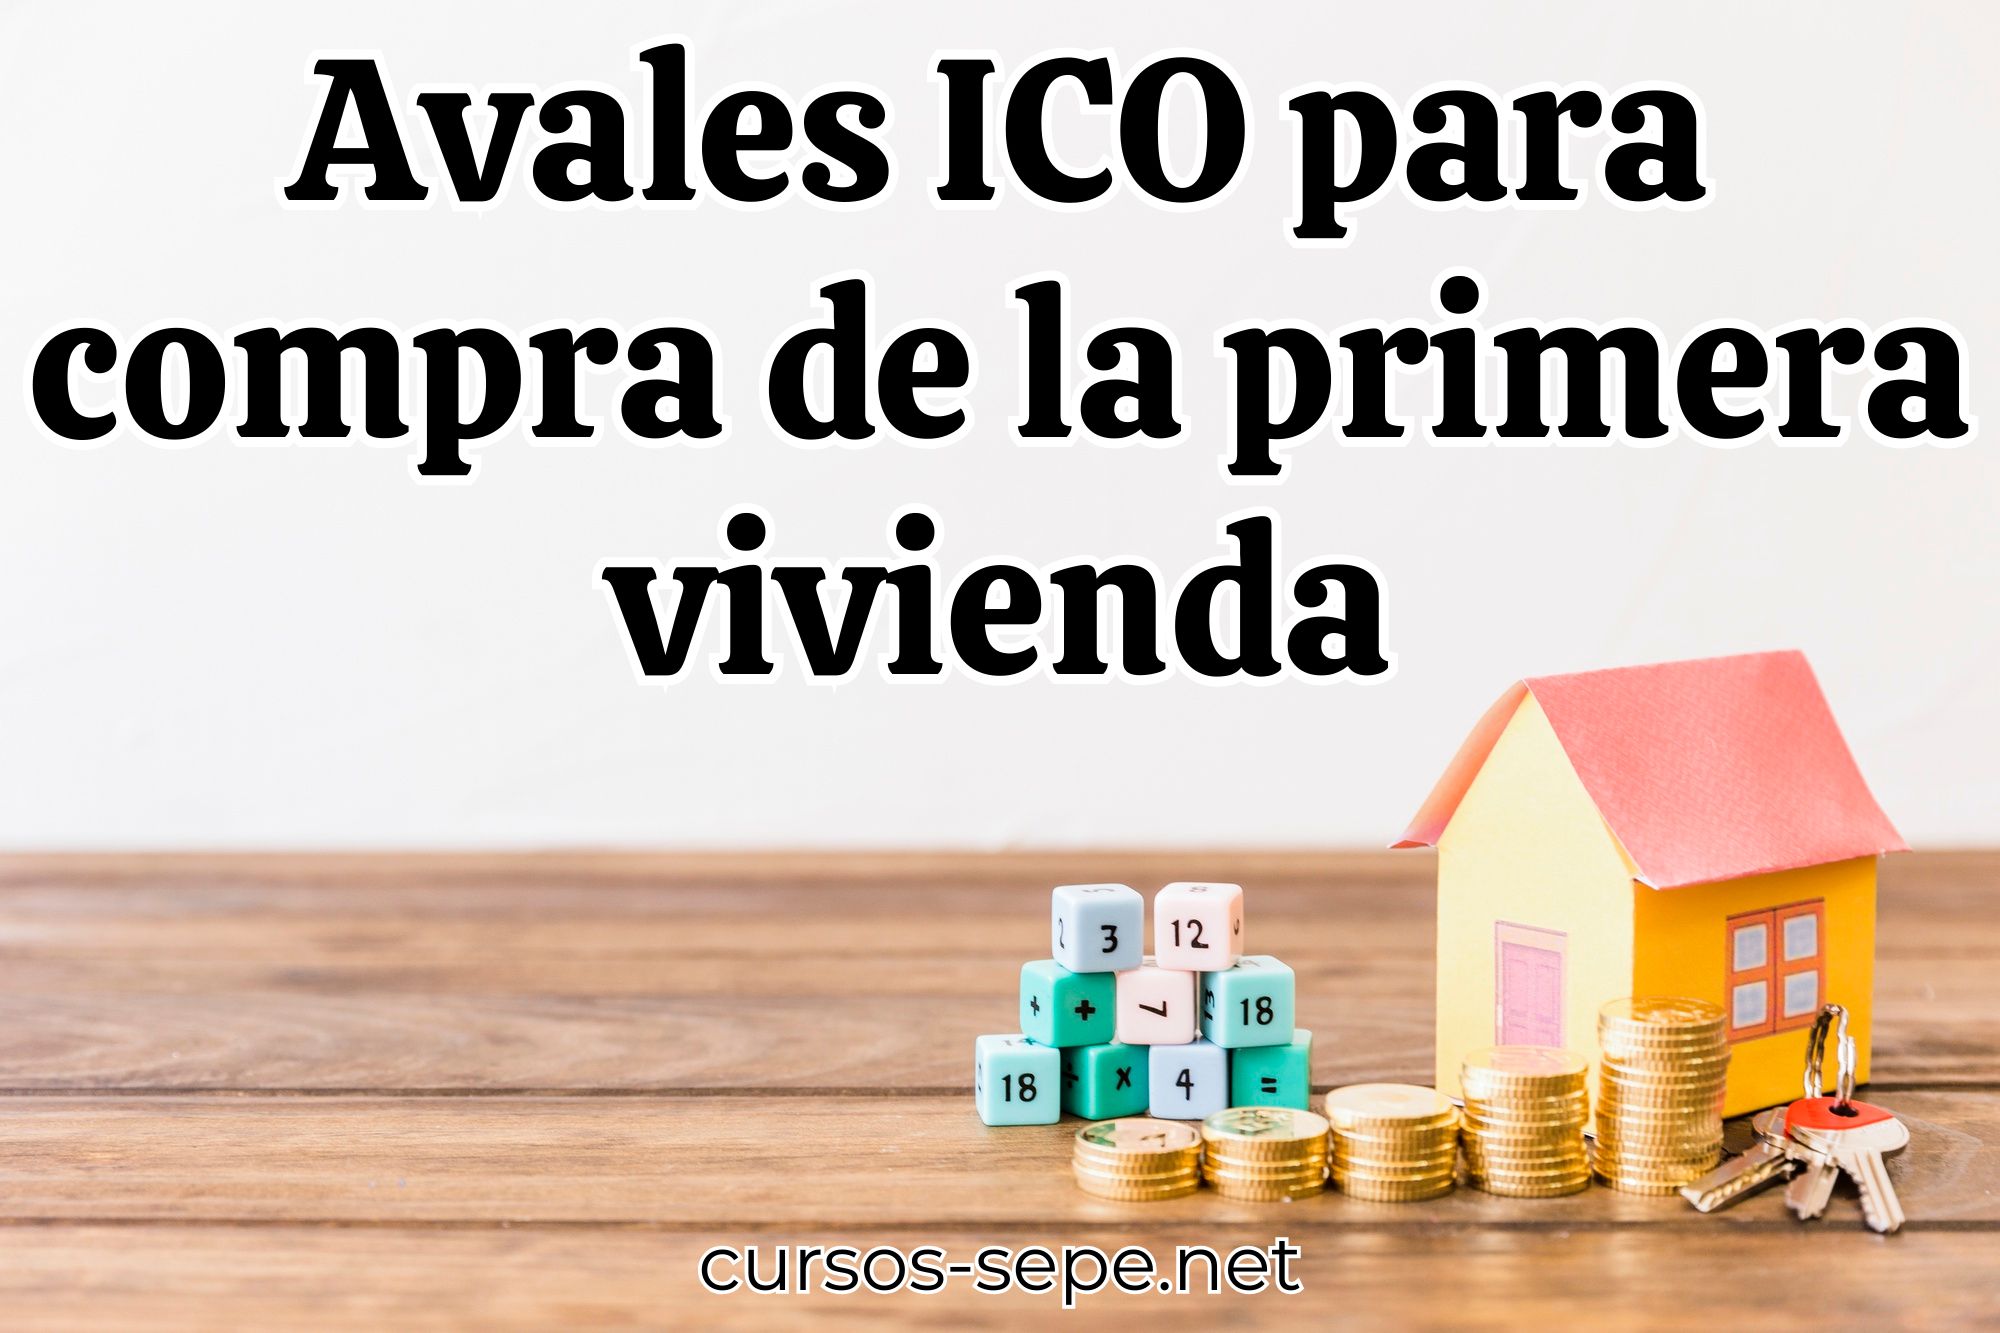 Aprende a solictrar los avales ICO par ala compra de tu primera vivienda en España